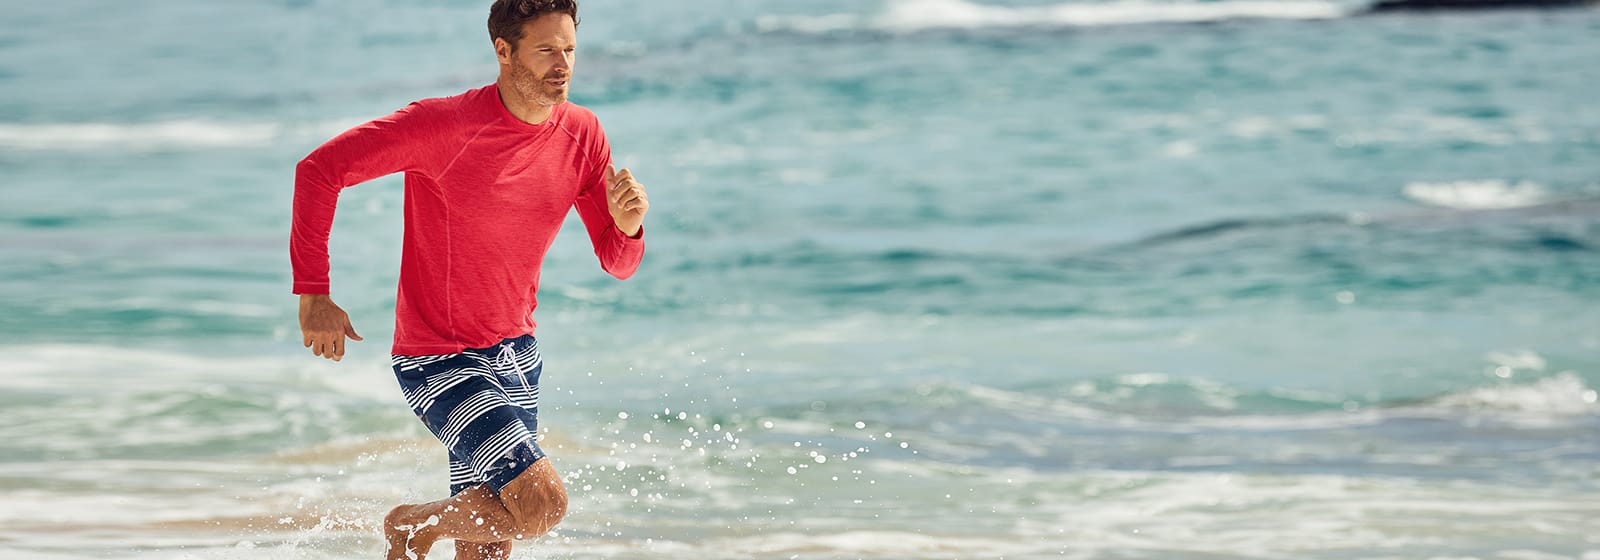 Sind Board-Shorts das Gleiche wie Badehosen?